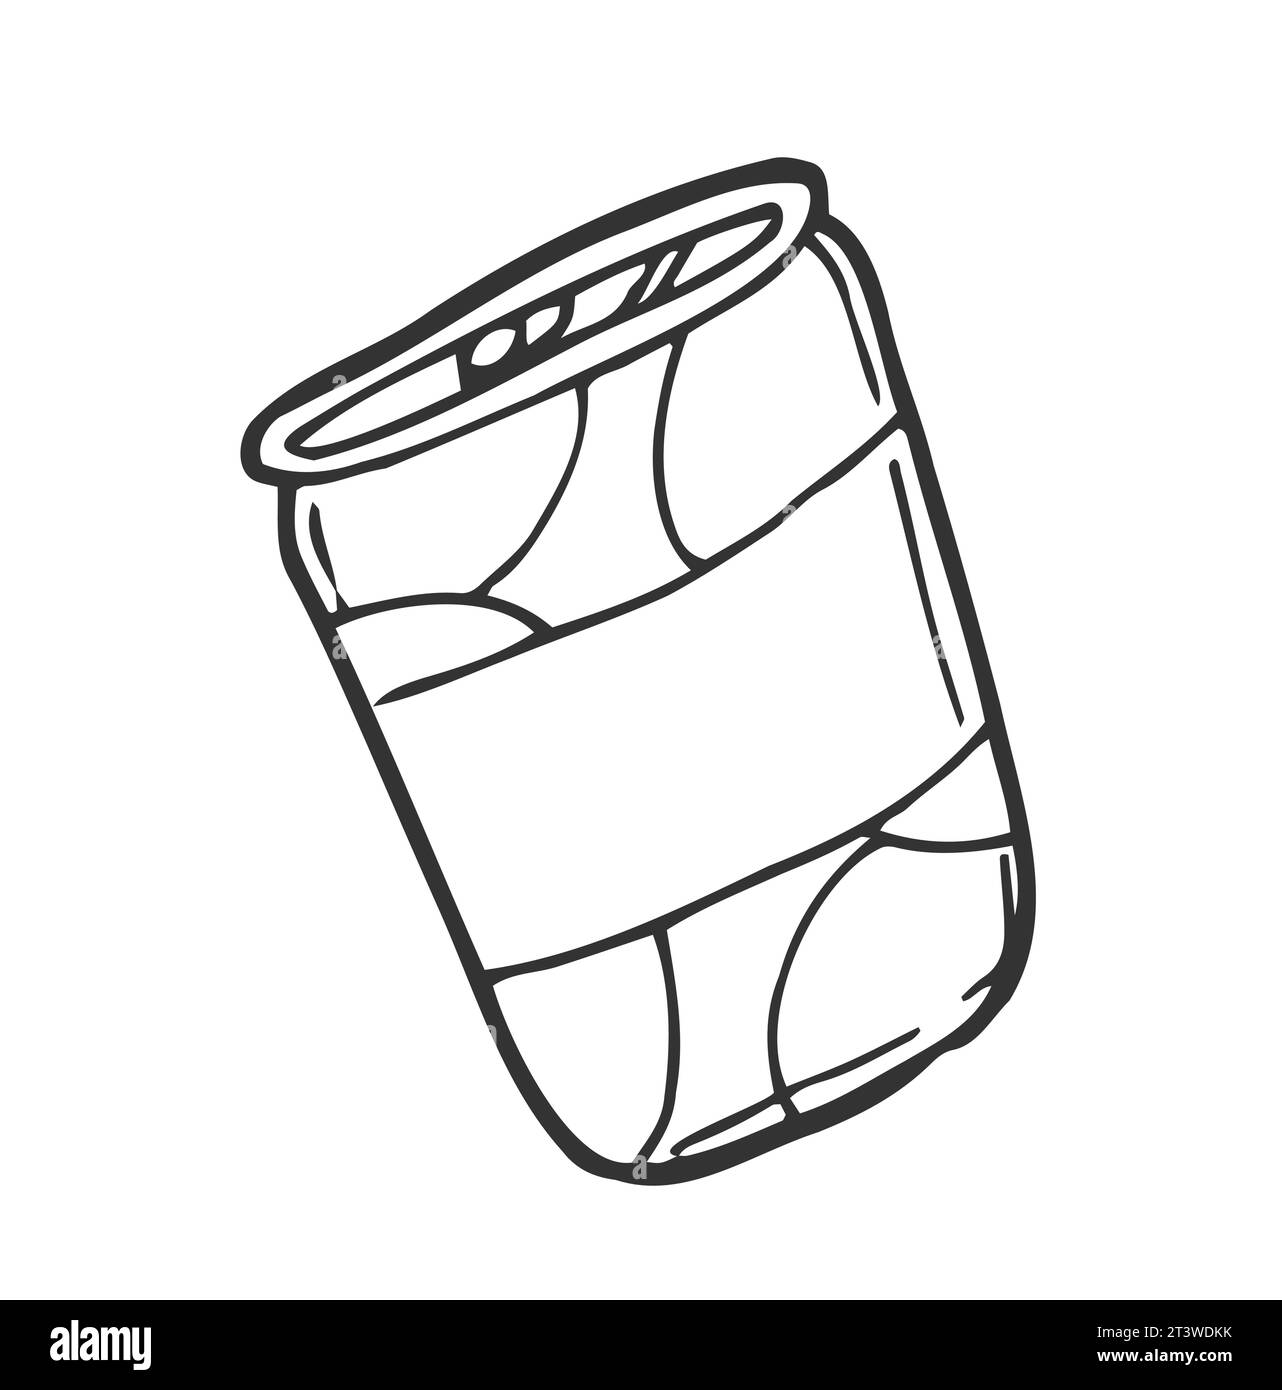 Soda pop peut dessiner à la main l'icône de doodle de contour. Boîte métallique de soda pop avec illustration de dessin vectoriel de paille de boisson pour impression, web, mobile et infographie Illustration de Vecteur